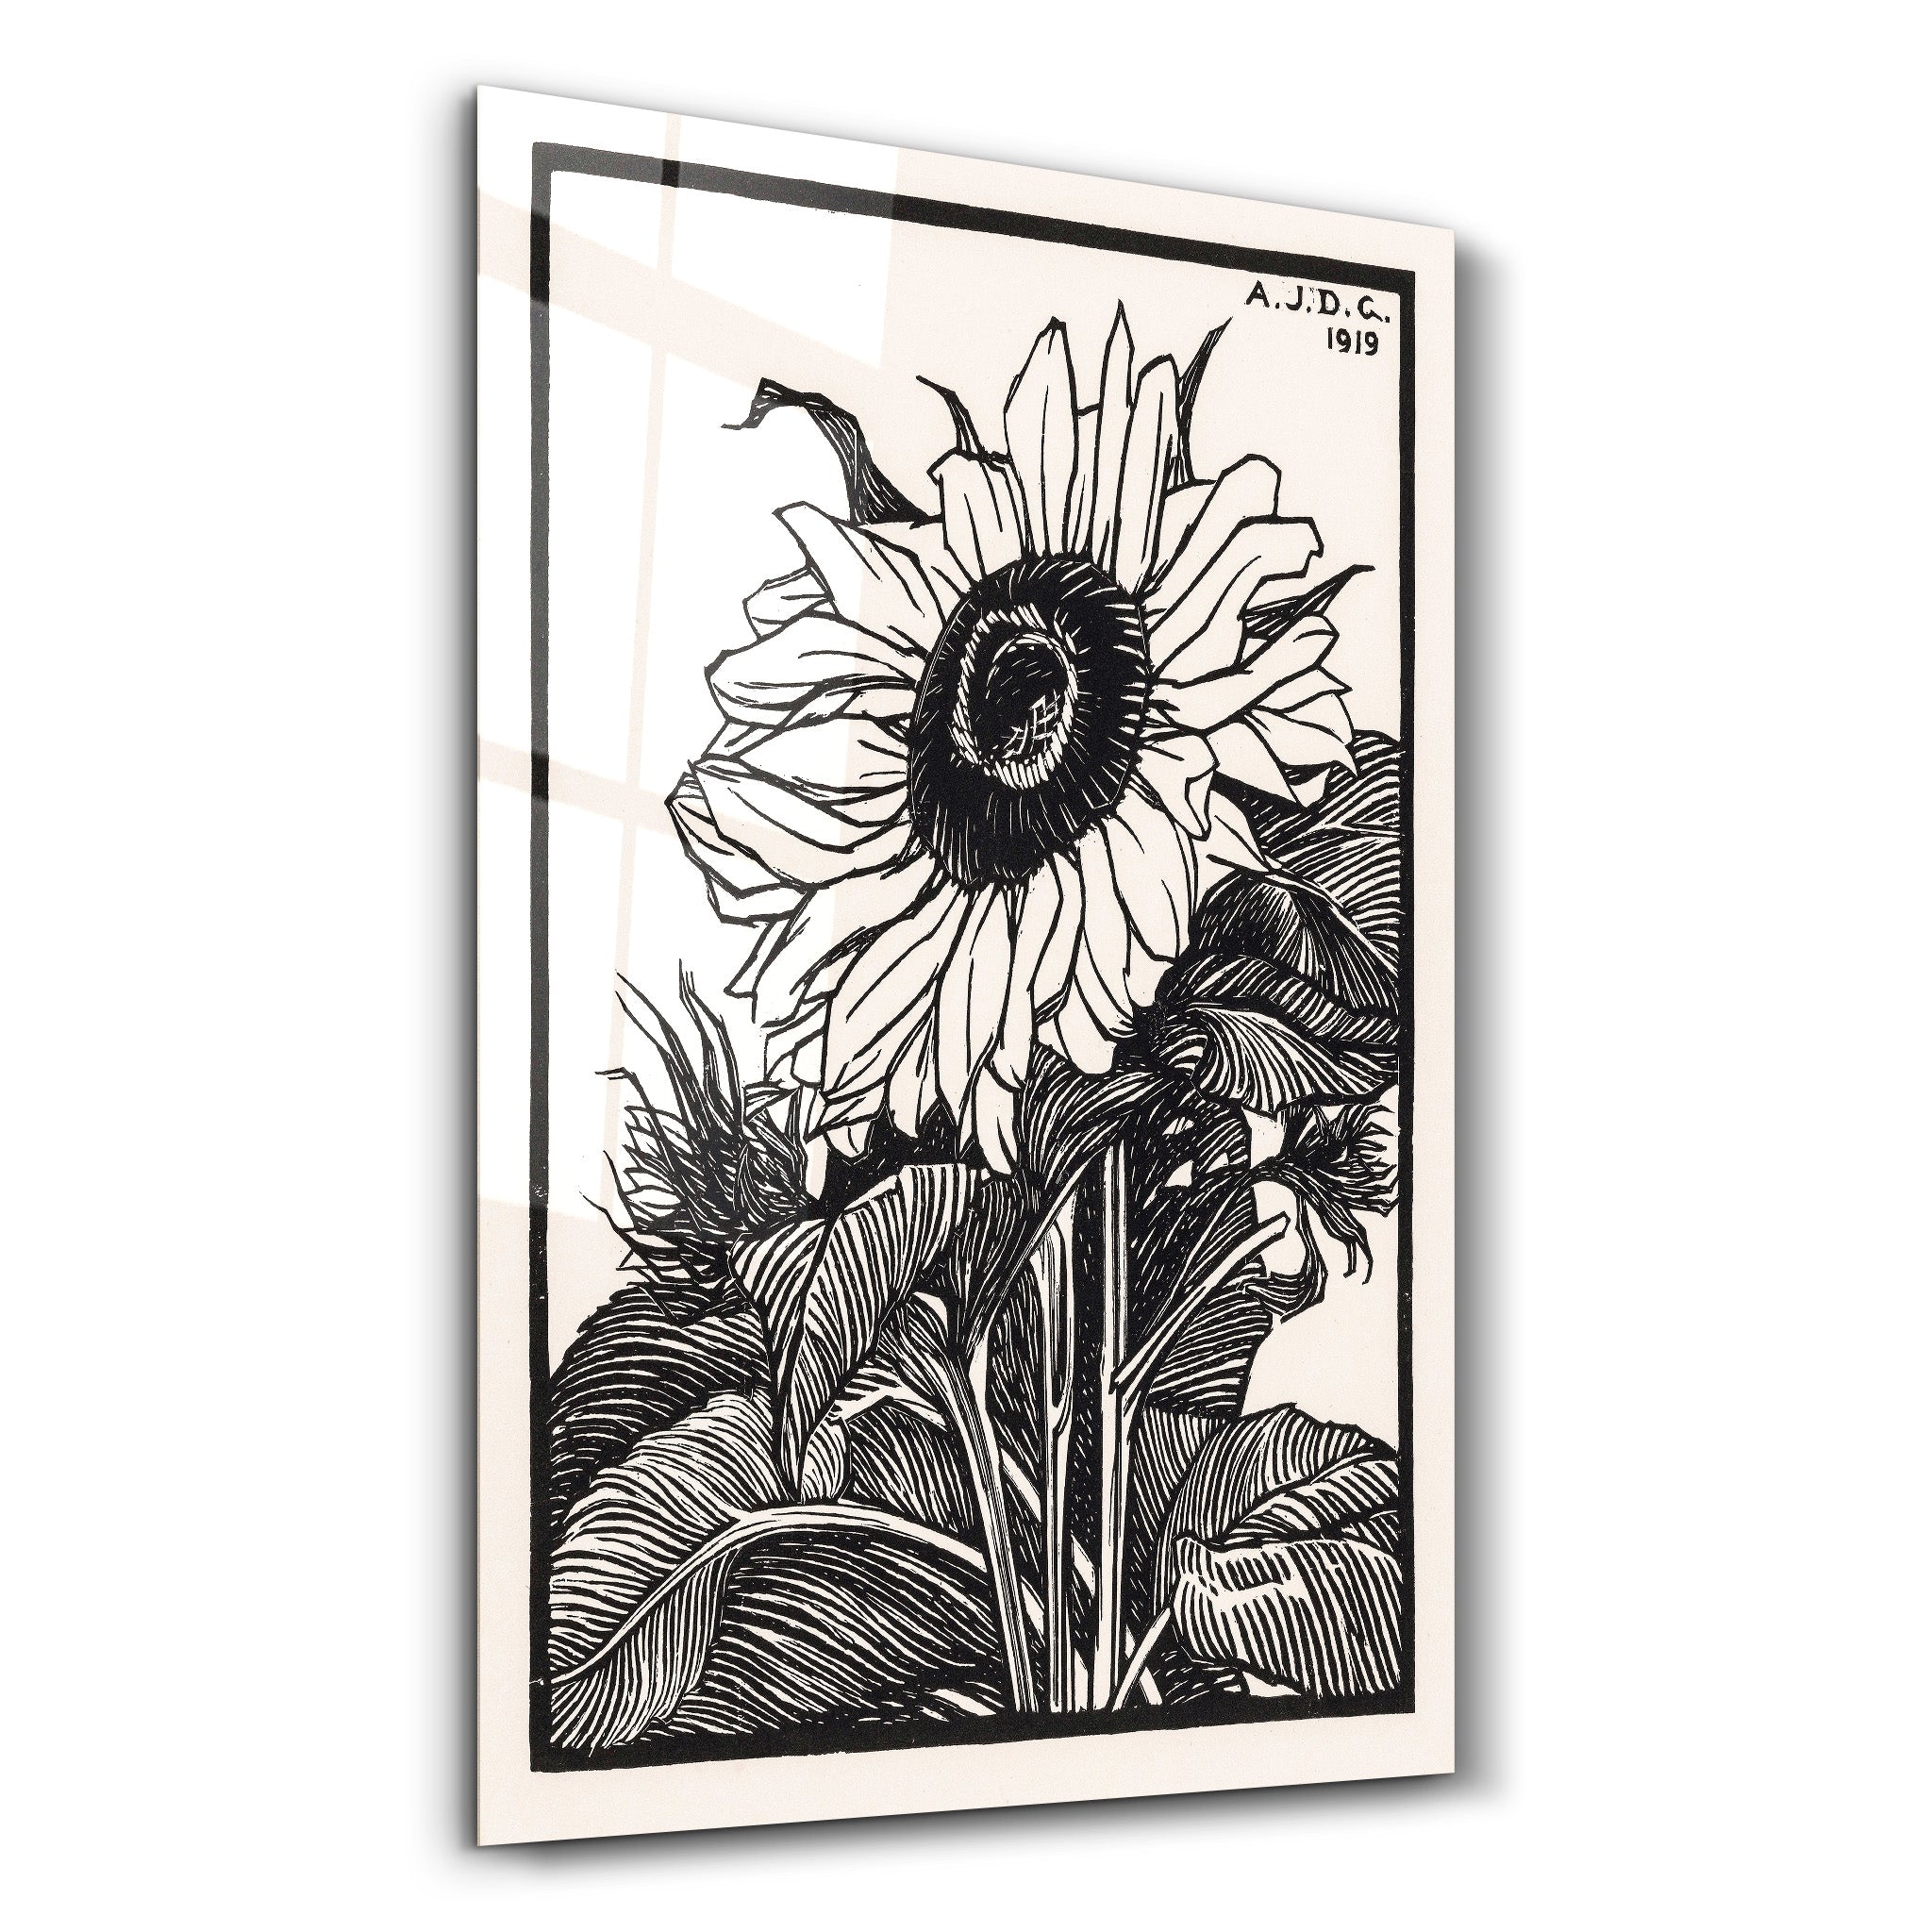 ・"Sunflower 1919 by Julie de Graag"・Gallery Print Collection Glass Wall Art - ArtDesigna Glass Printing Wall Art